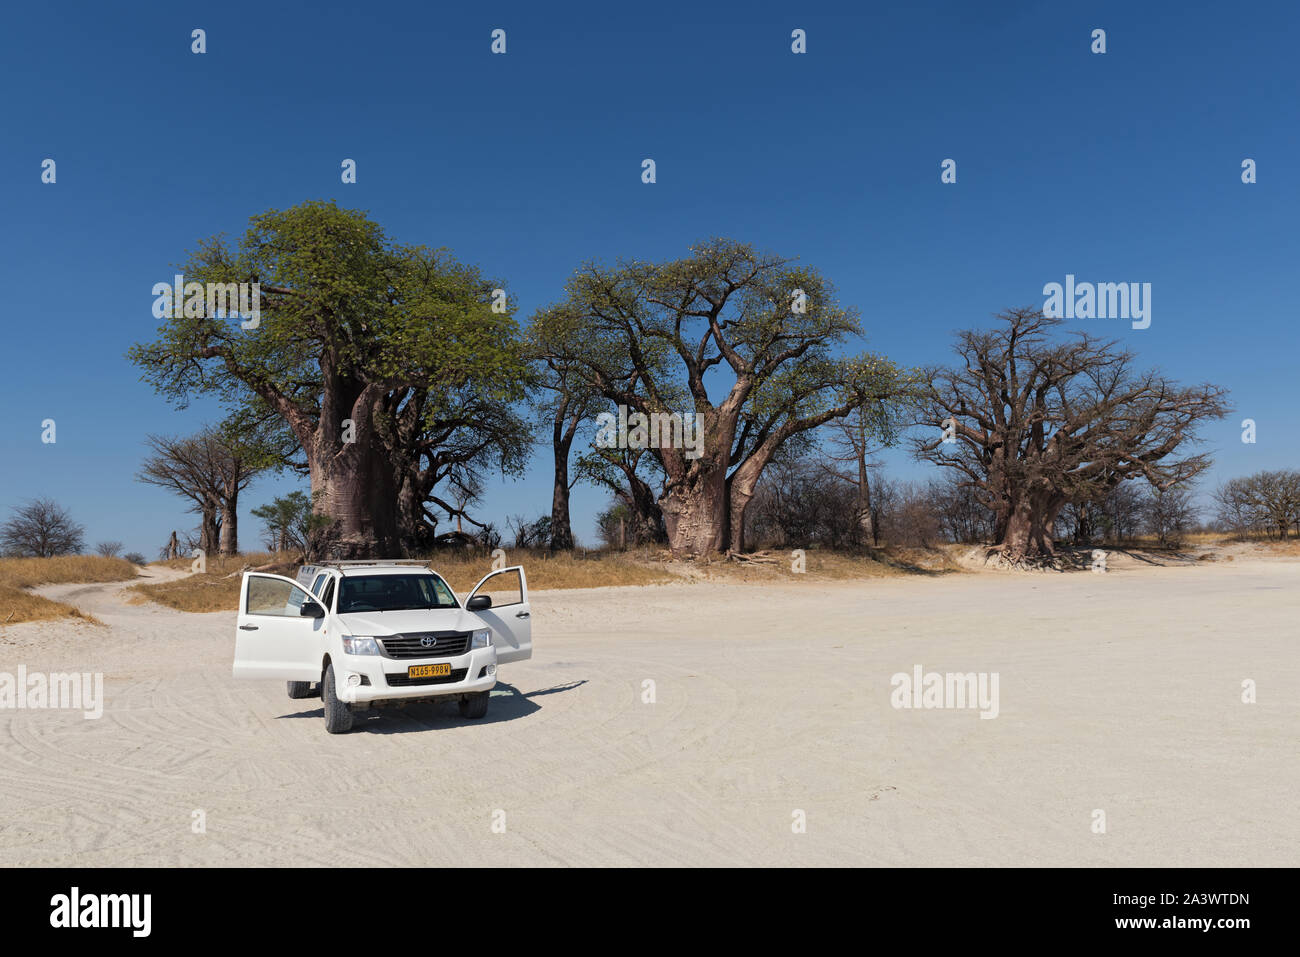 Coche aparcado delante de la baines baobab parque nacional de nxai pan botswana Foto de stock